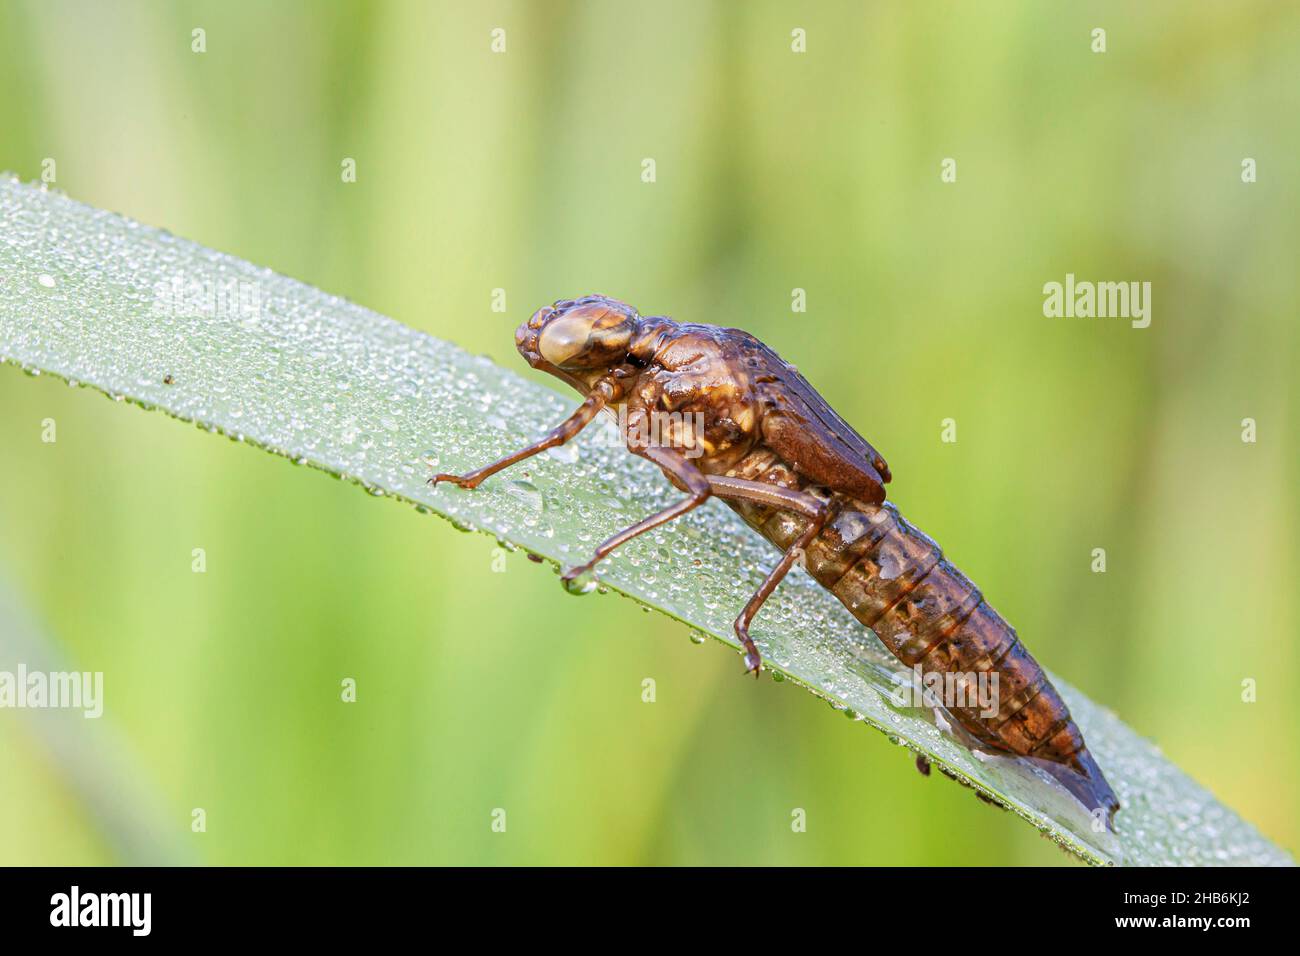 Libellules; les aigres (Europe) (Anisoptera), la larve laisse de l'eau à la fin du stade larvaire et s'attache à une structure verticale pour l'éclosion, Banque D'Images